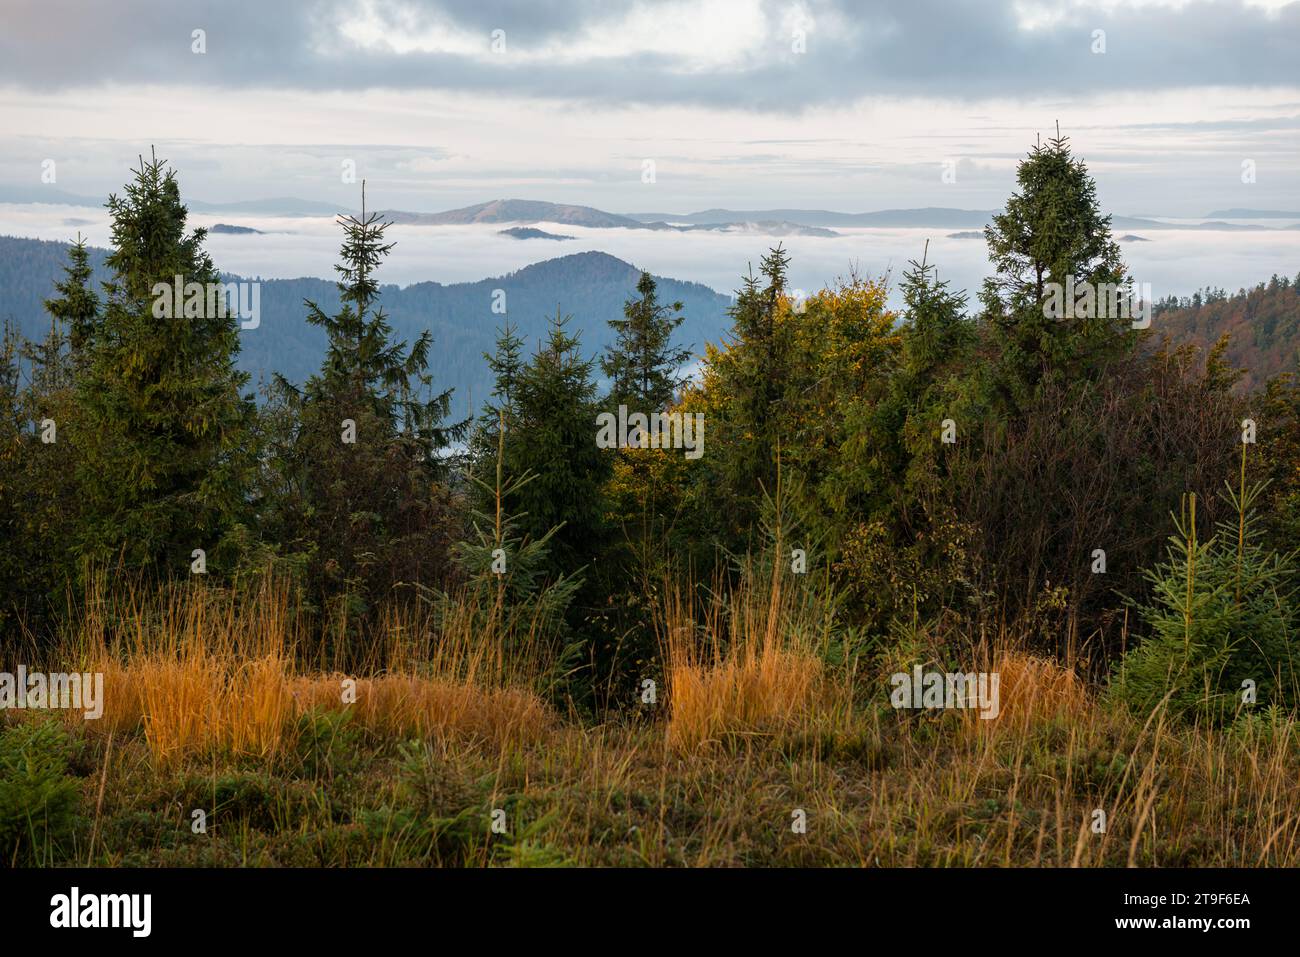 Autumn in Beskid region of Carpathians Mountains, Ukraine Stock Photo